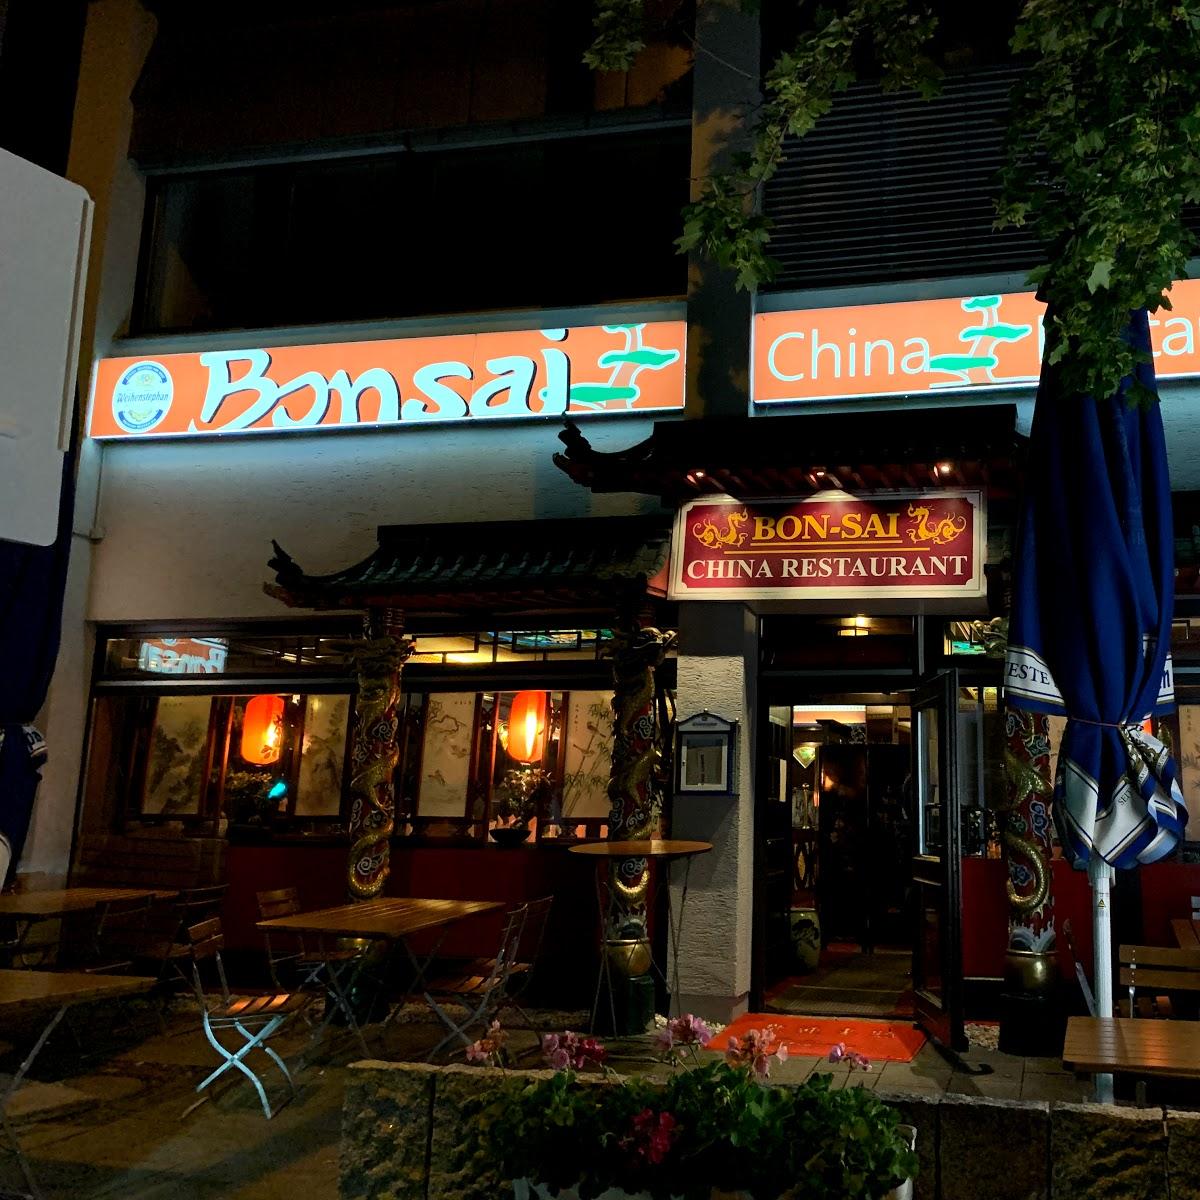 Restaurant "China Restaurant Bon Sai" in München